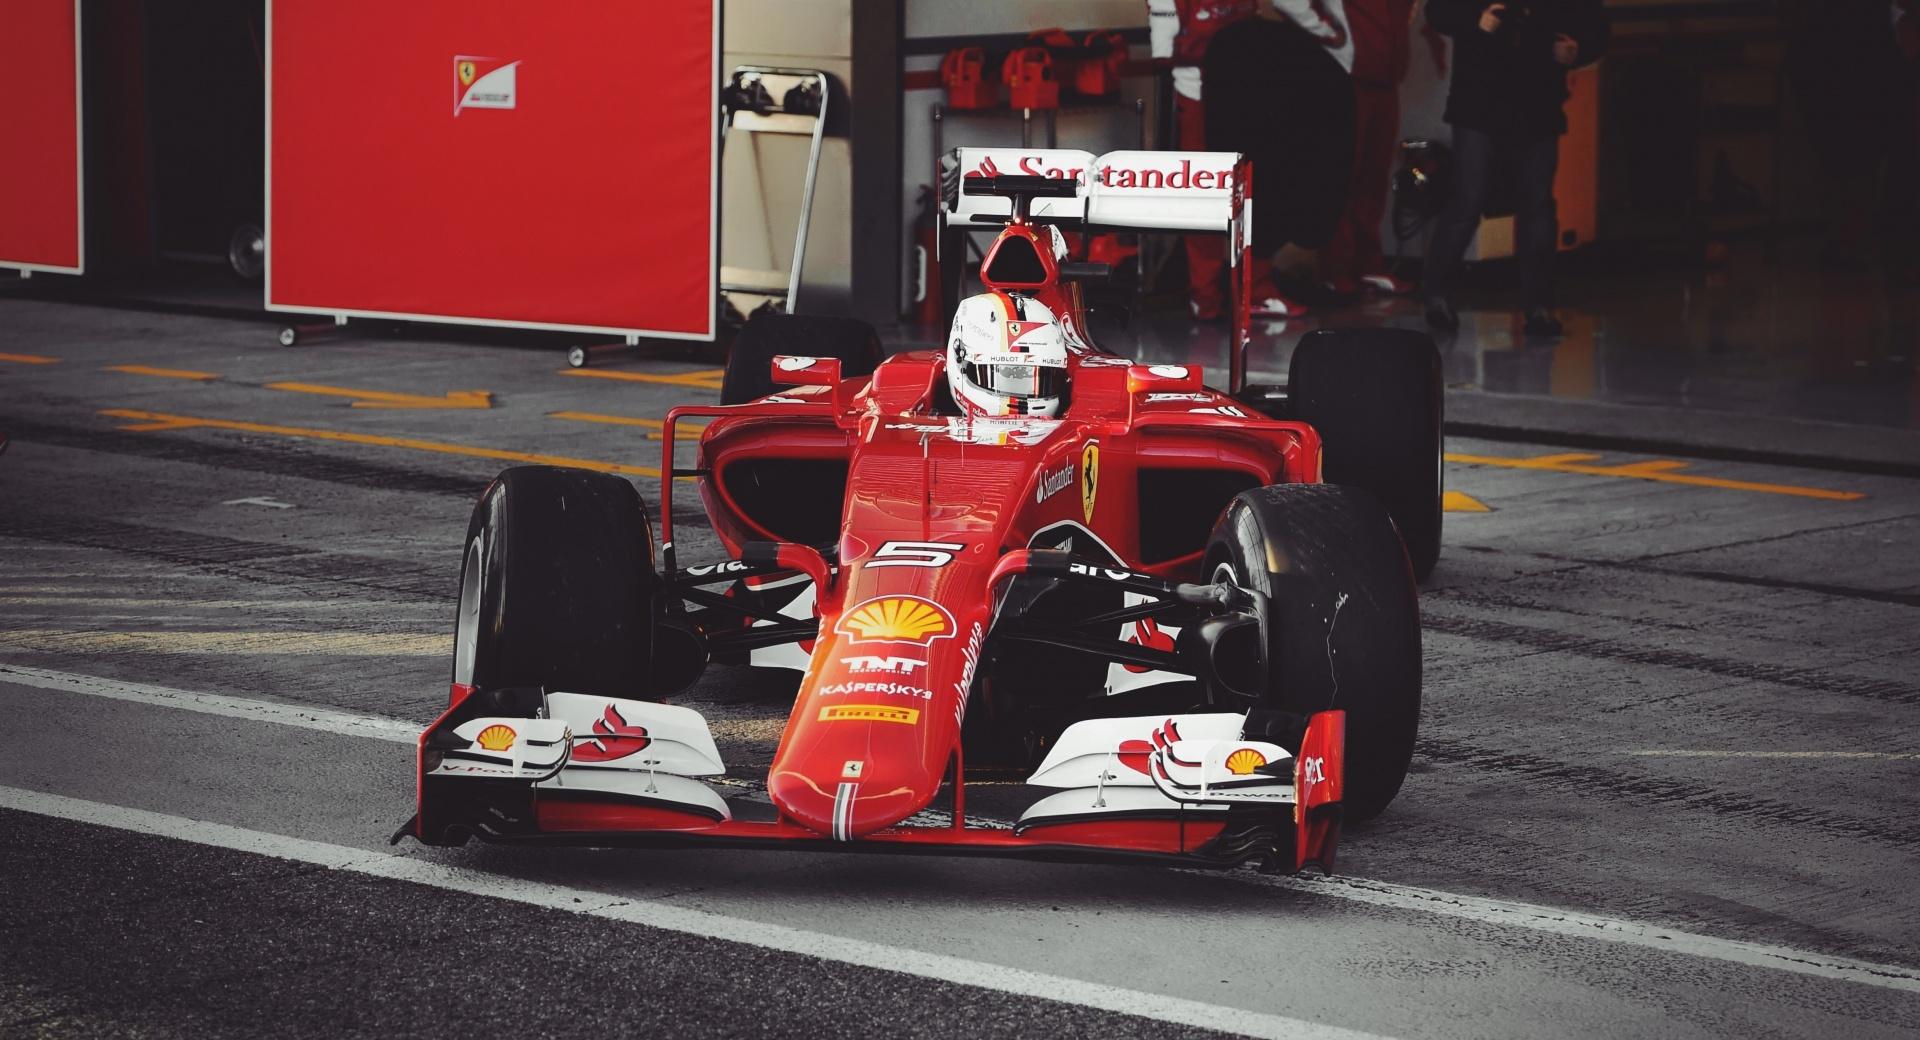 Vettel Ferrari 2015 at 2048 x 2048 iPad size wallpapers HD quality